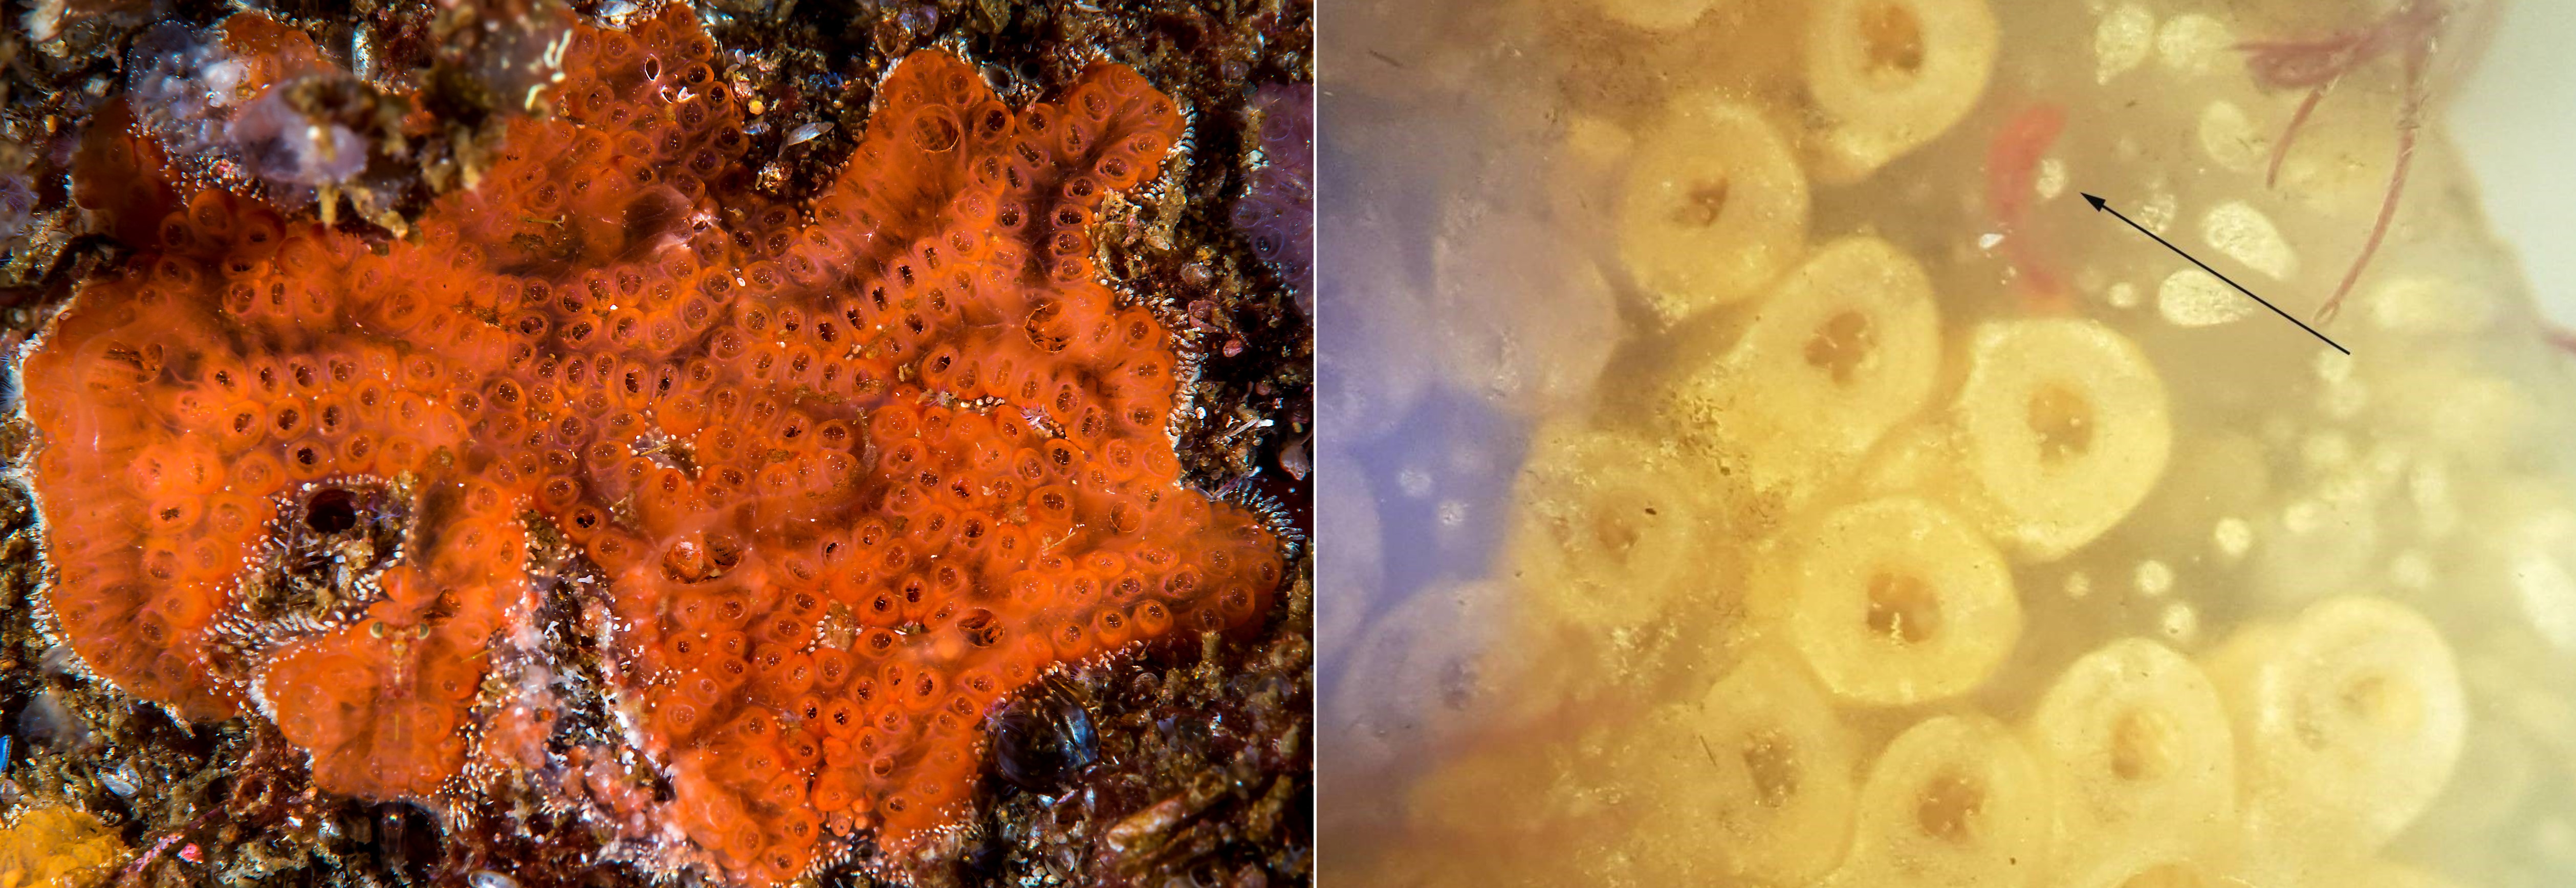 Dette bildet viser Botryllus violaceus til venstre og røde larver til venstre 